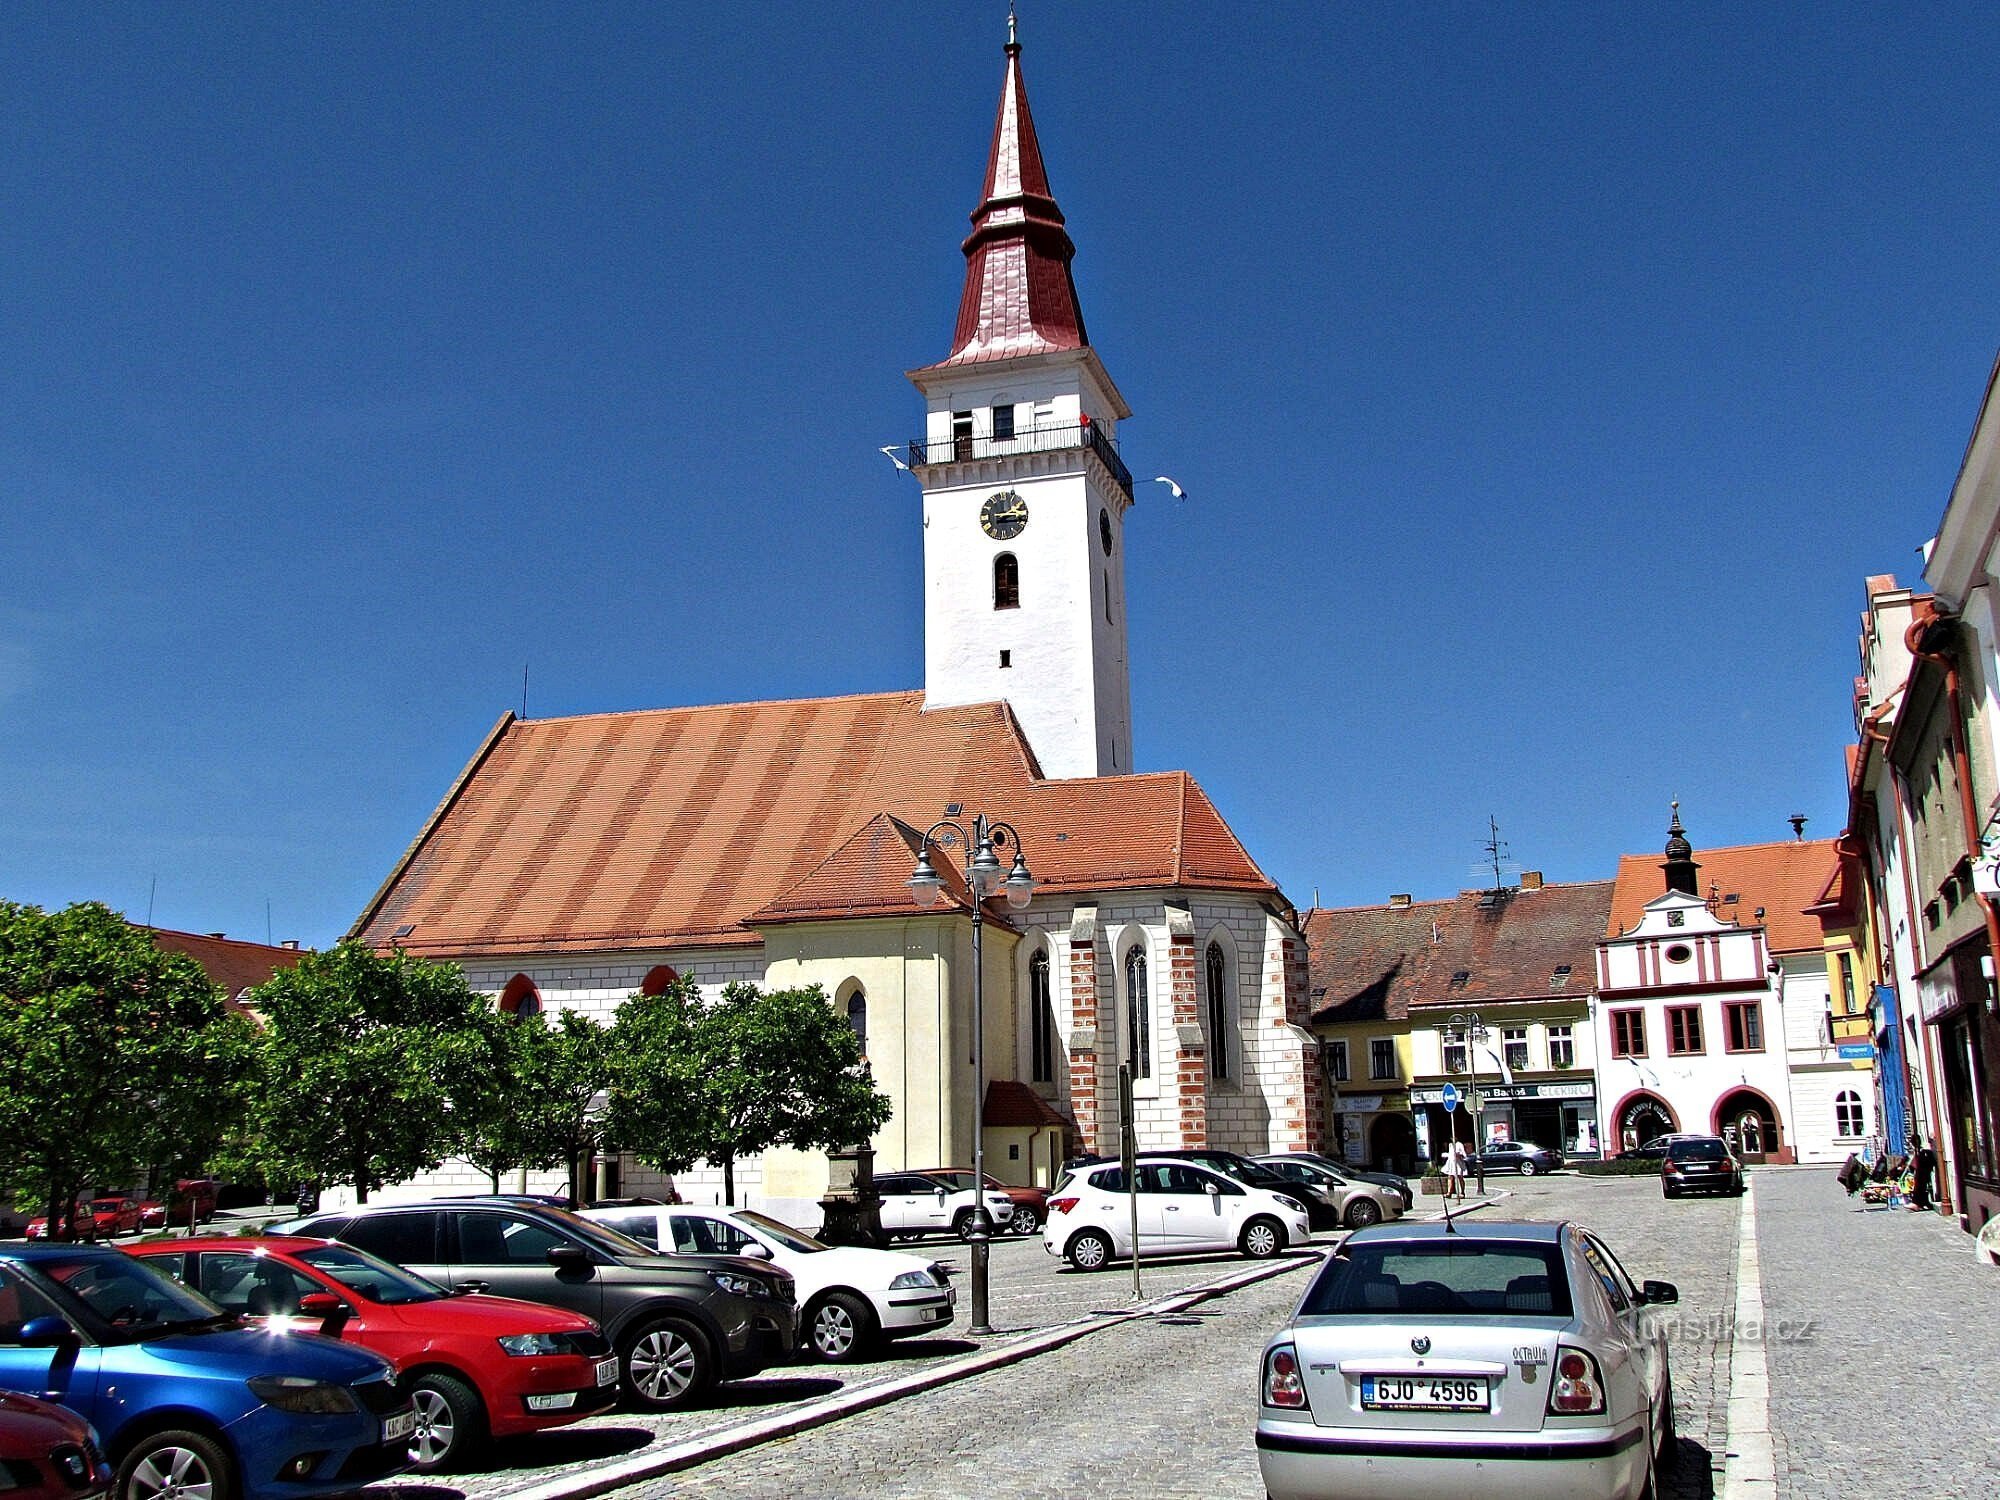 Jemnican Pyhän Stanislavin kirkko